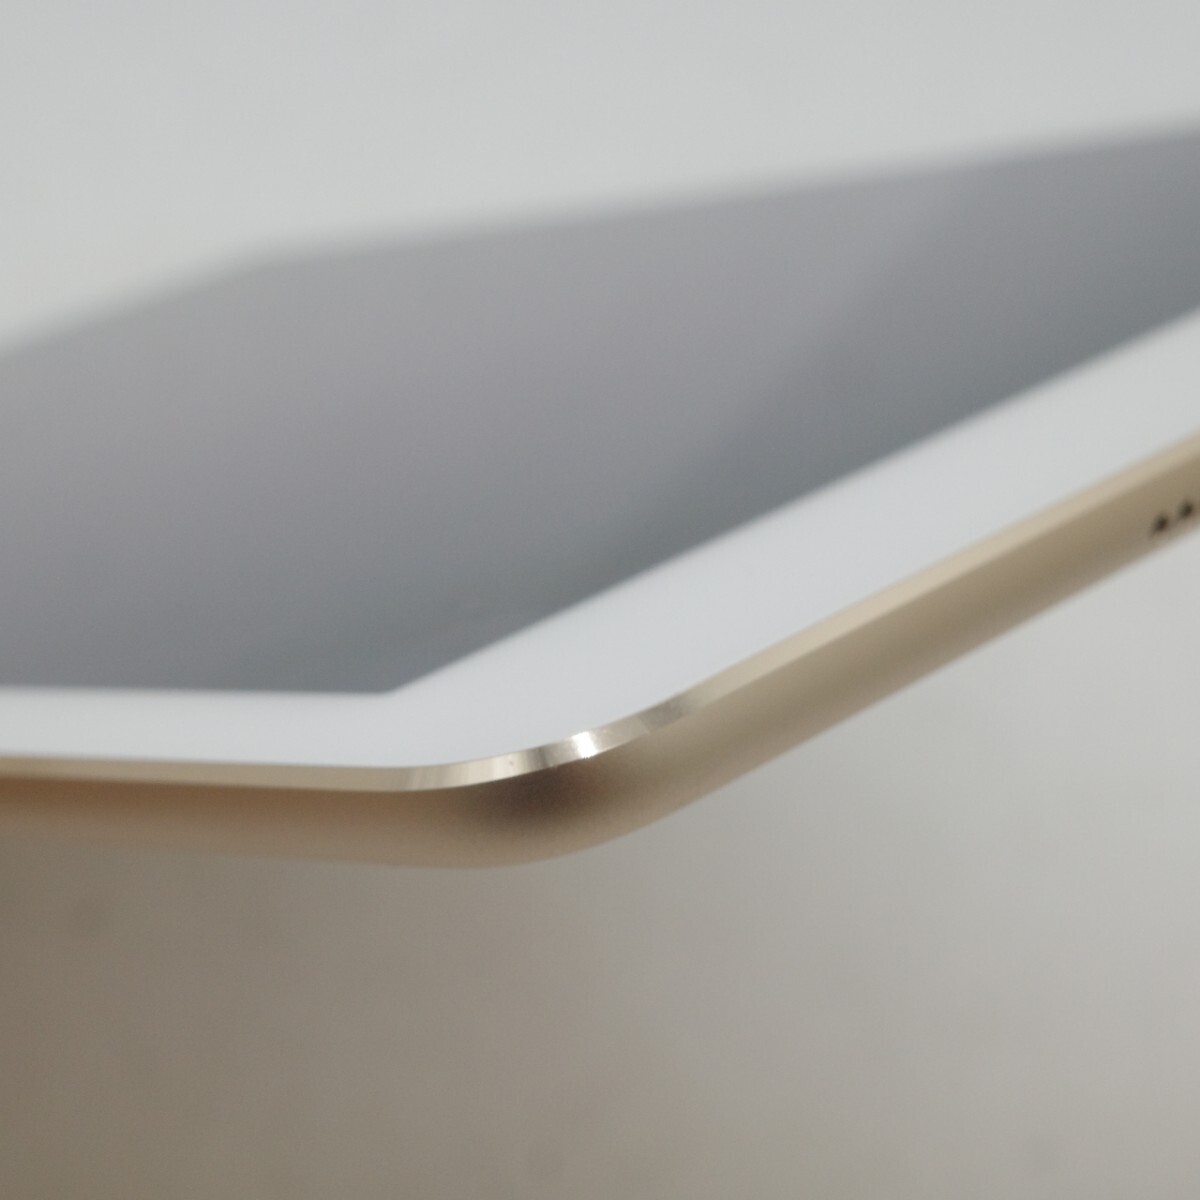 iPad Air2 WiFi 16GB no. 2 поколение Gold A1566 Apple Apple iPad планшет 9.7 дюймовый 437g 169.5×6.1×240mm рабочее состояние подтверждено 